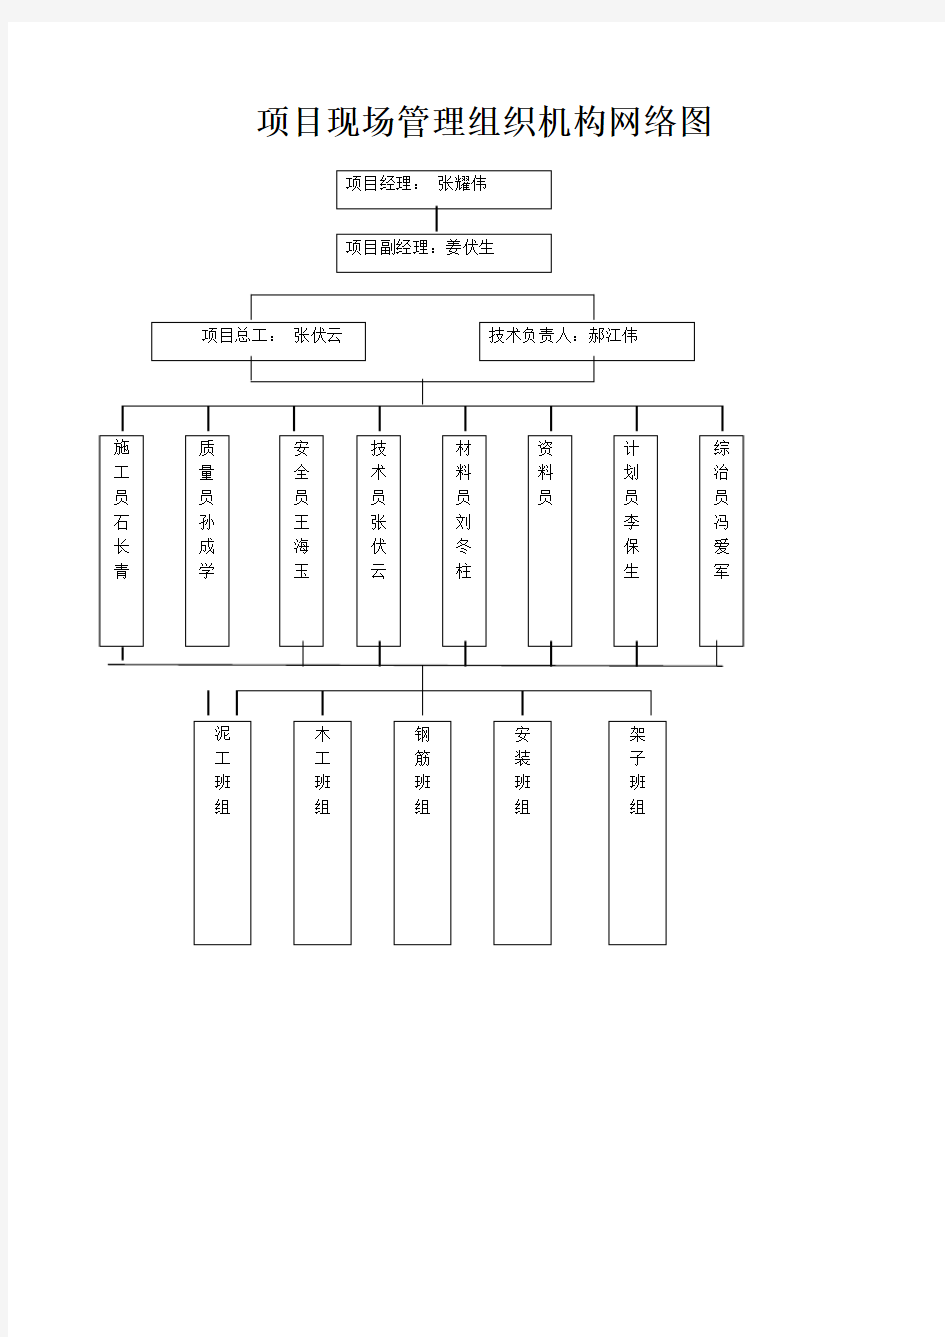 188343_项目现场管理组织机构网络图